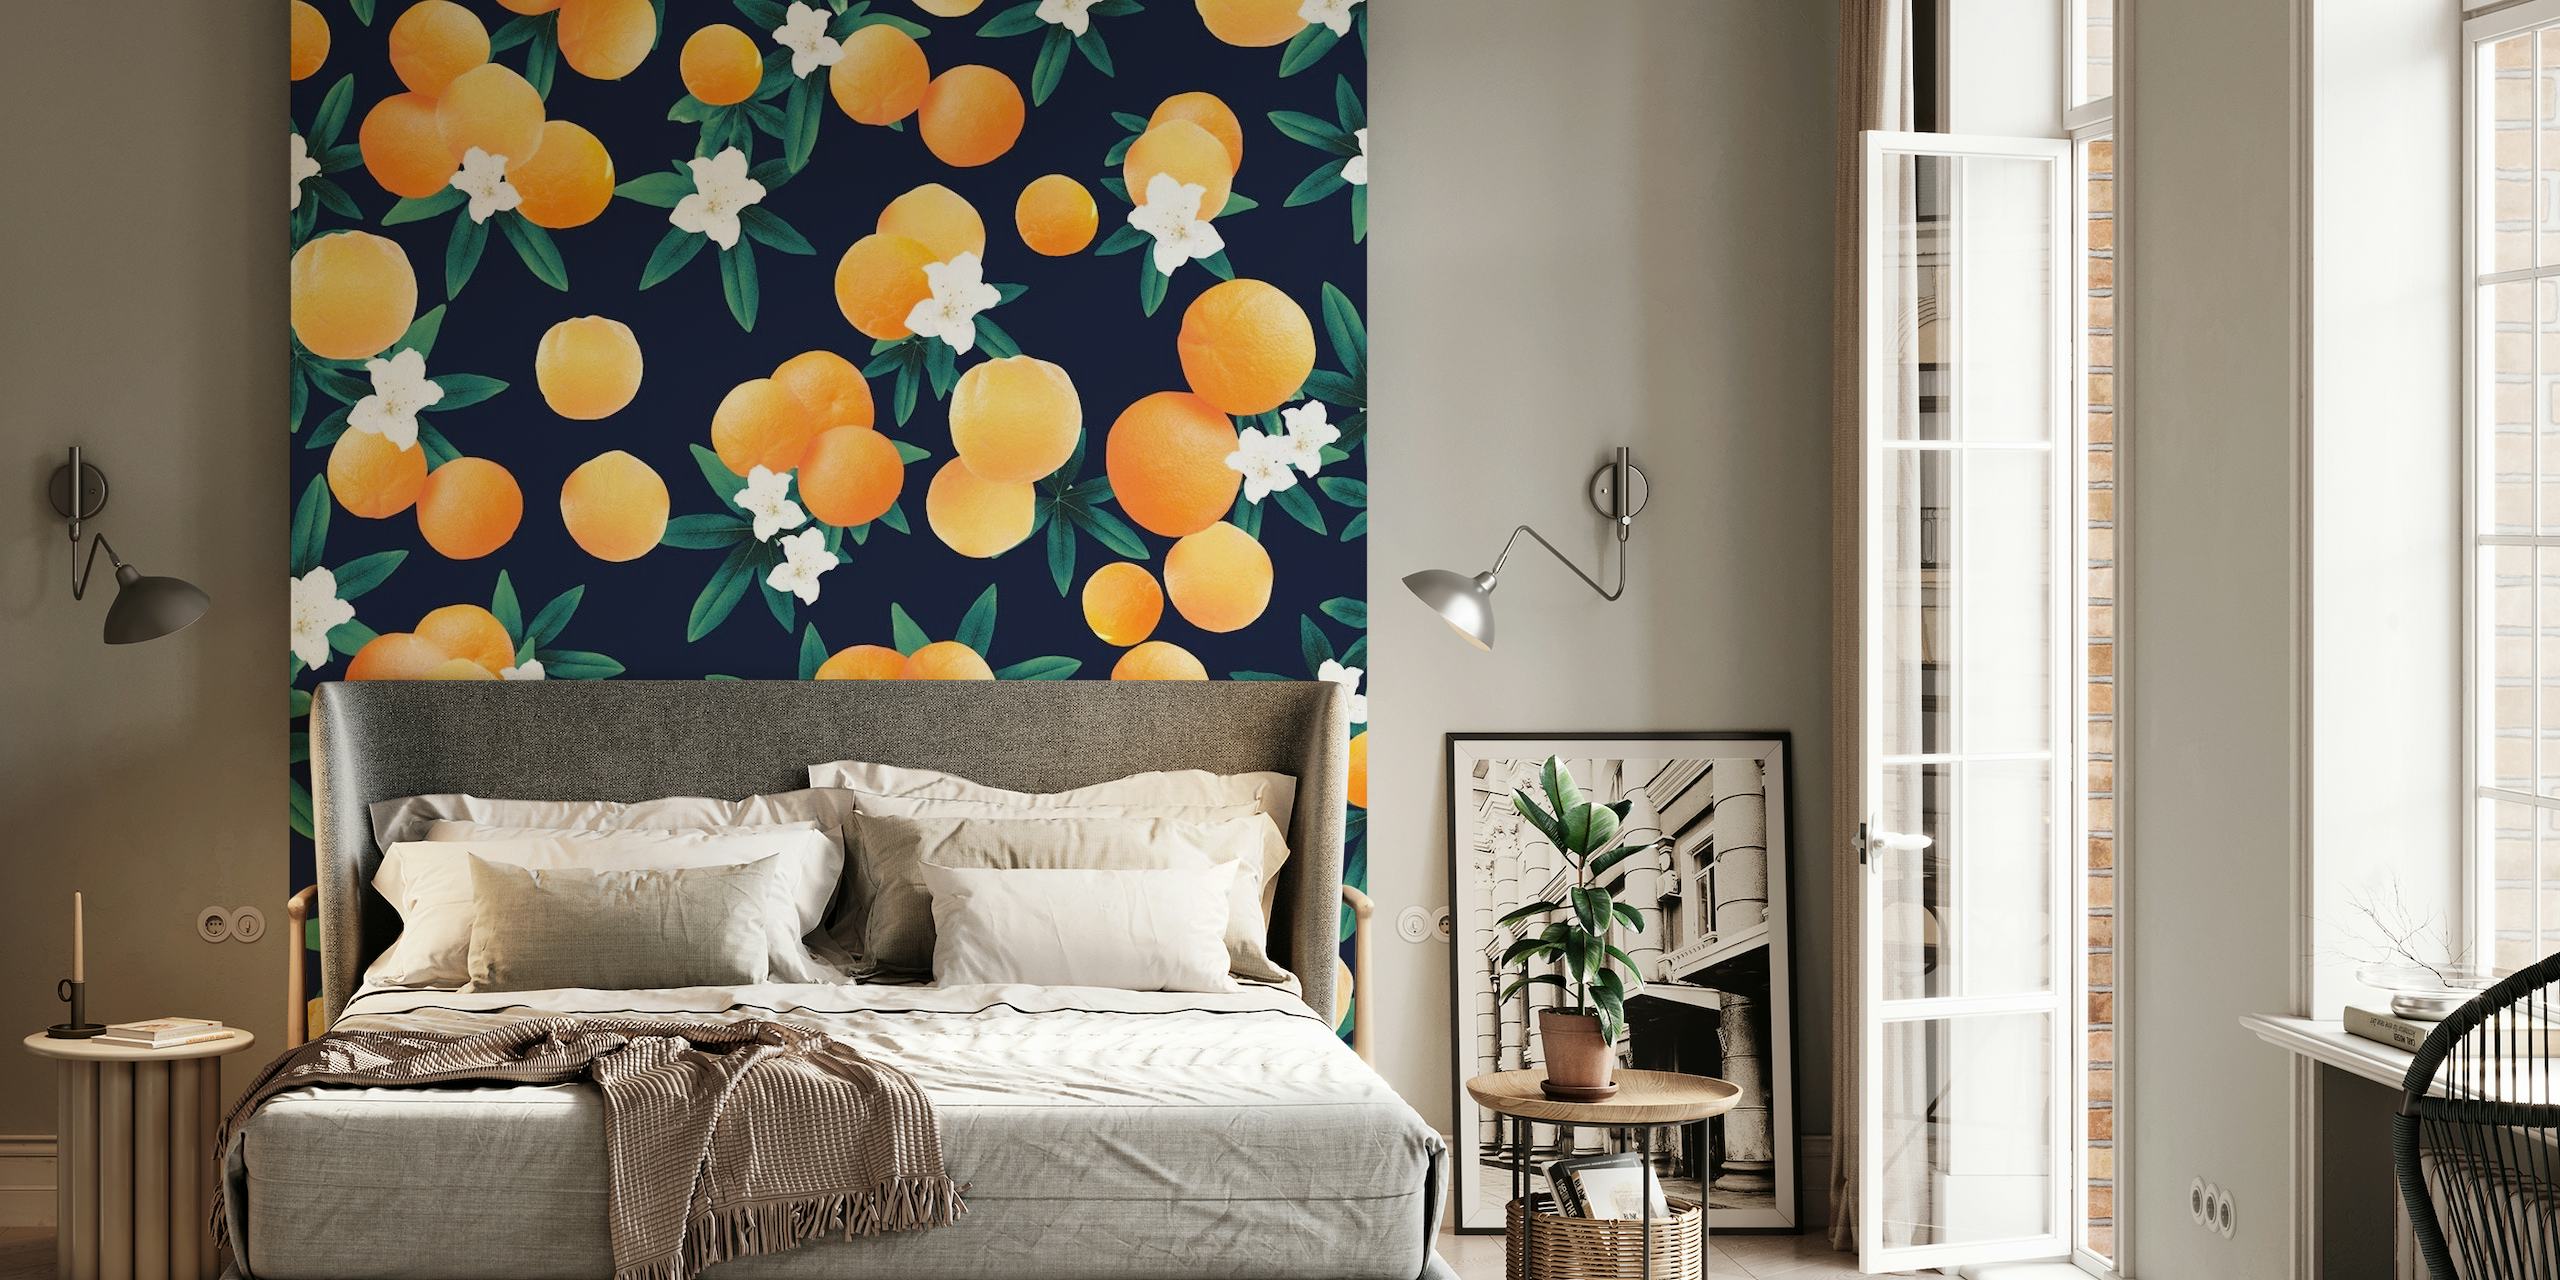 Murale représentant des agrumes orange vif et des fleurs blanches sur un fond bleu foncé.